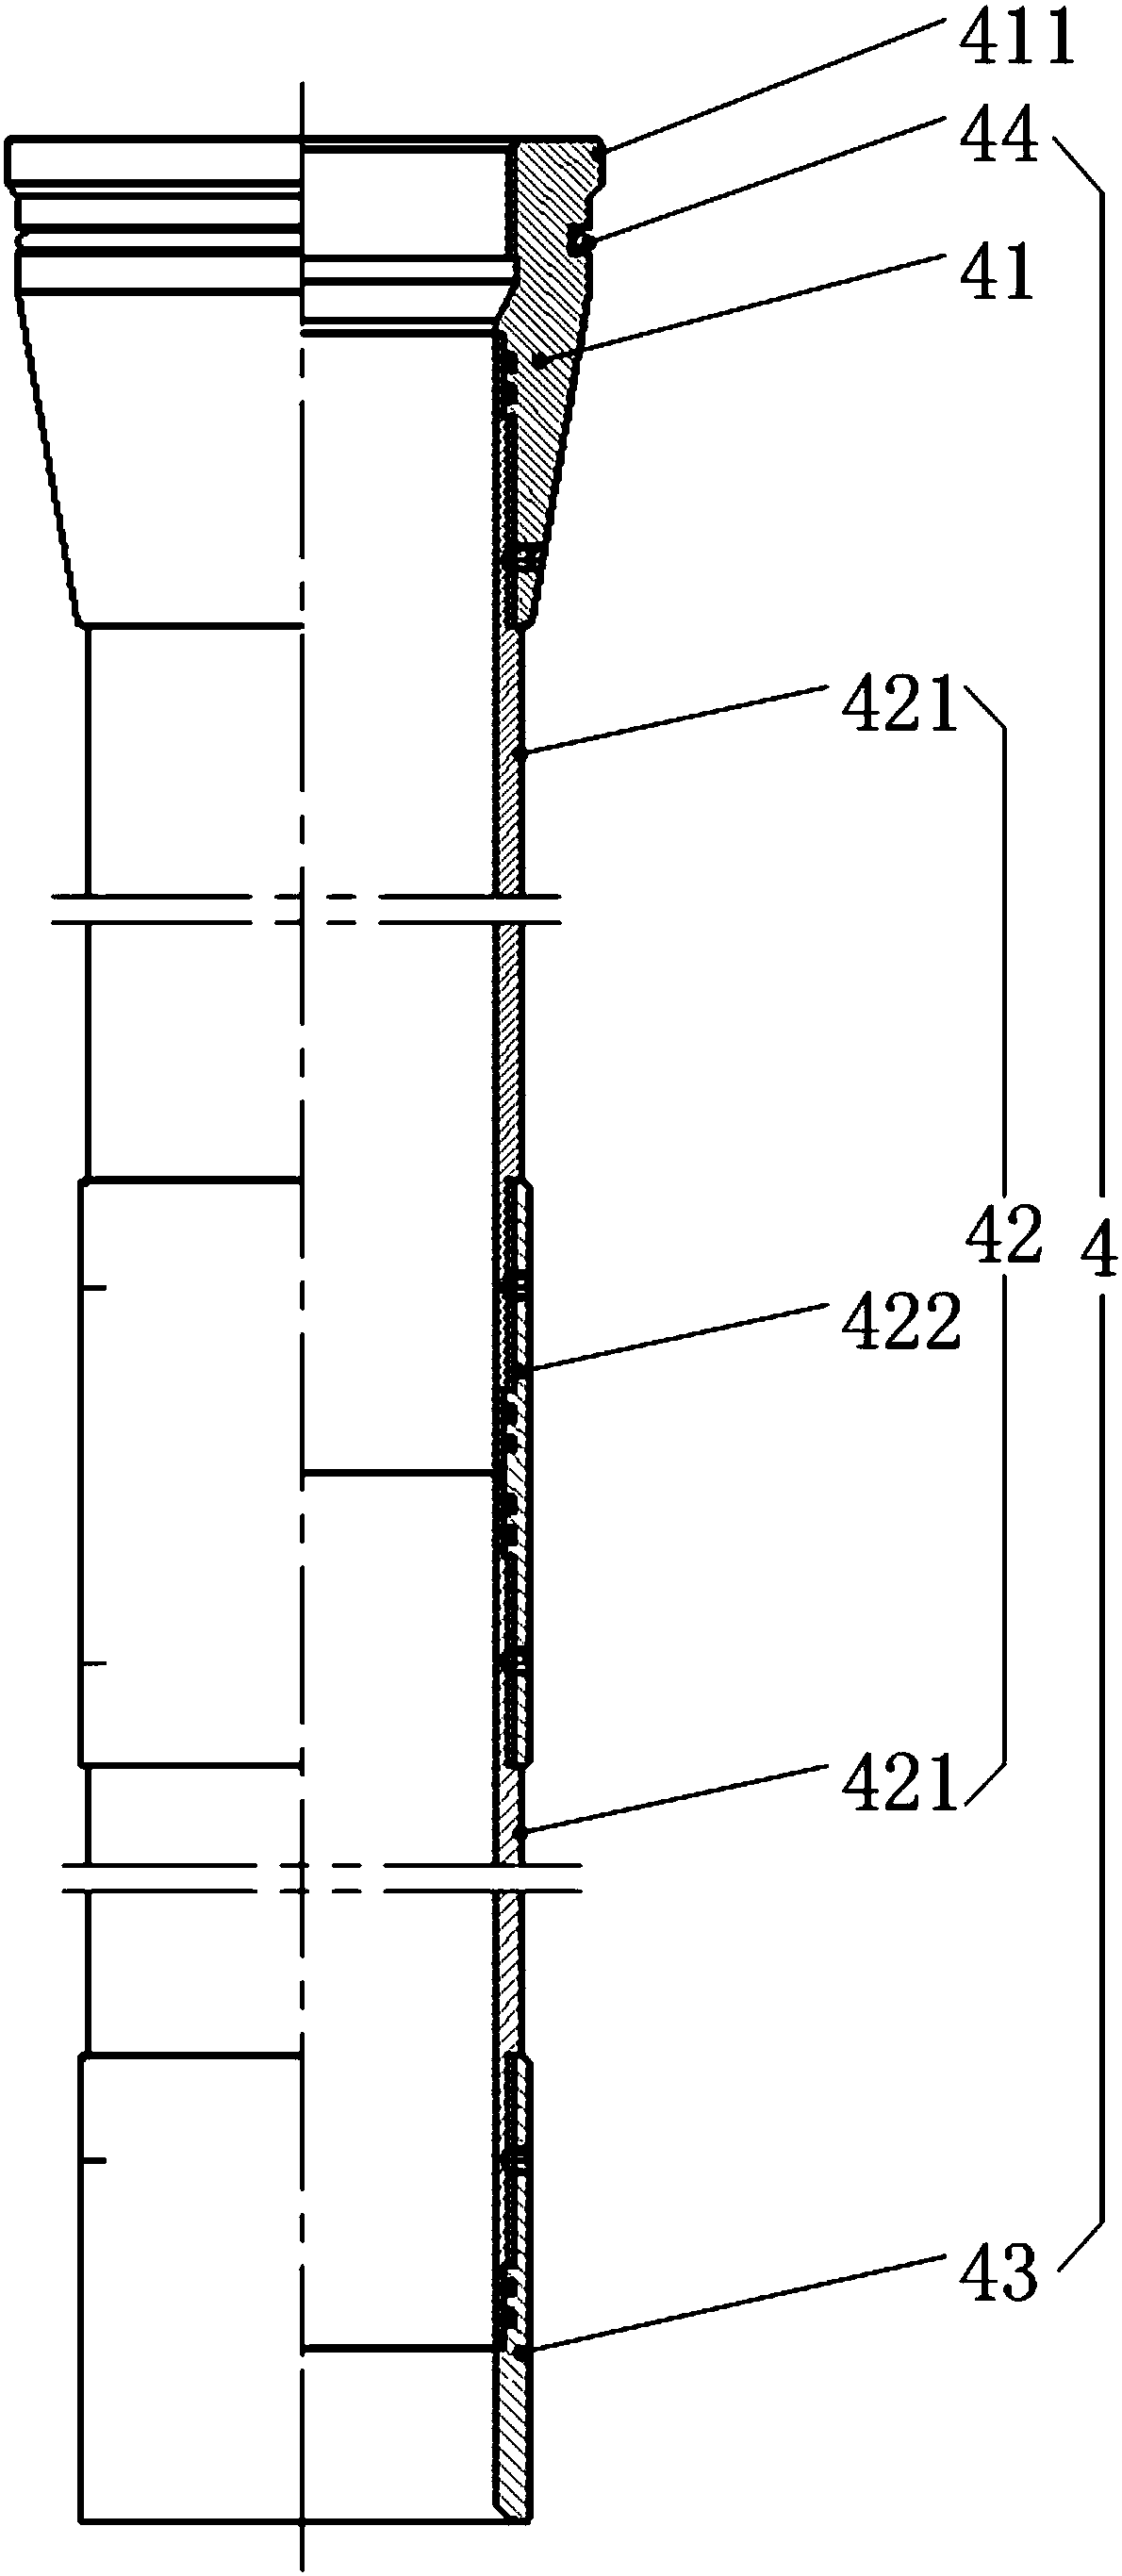 Reverse-circulation sand-flushing pipe column